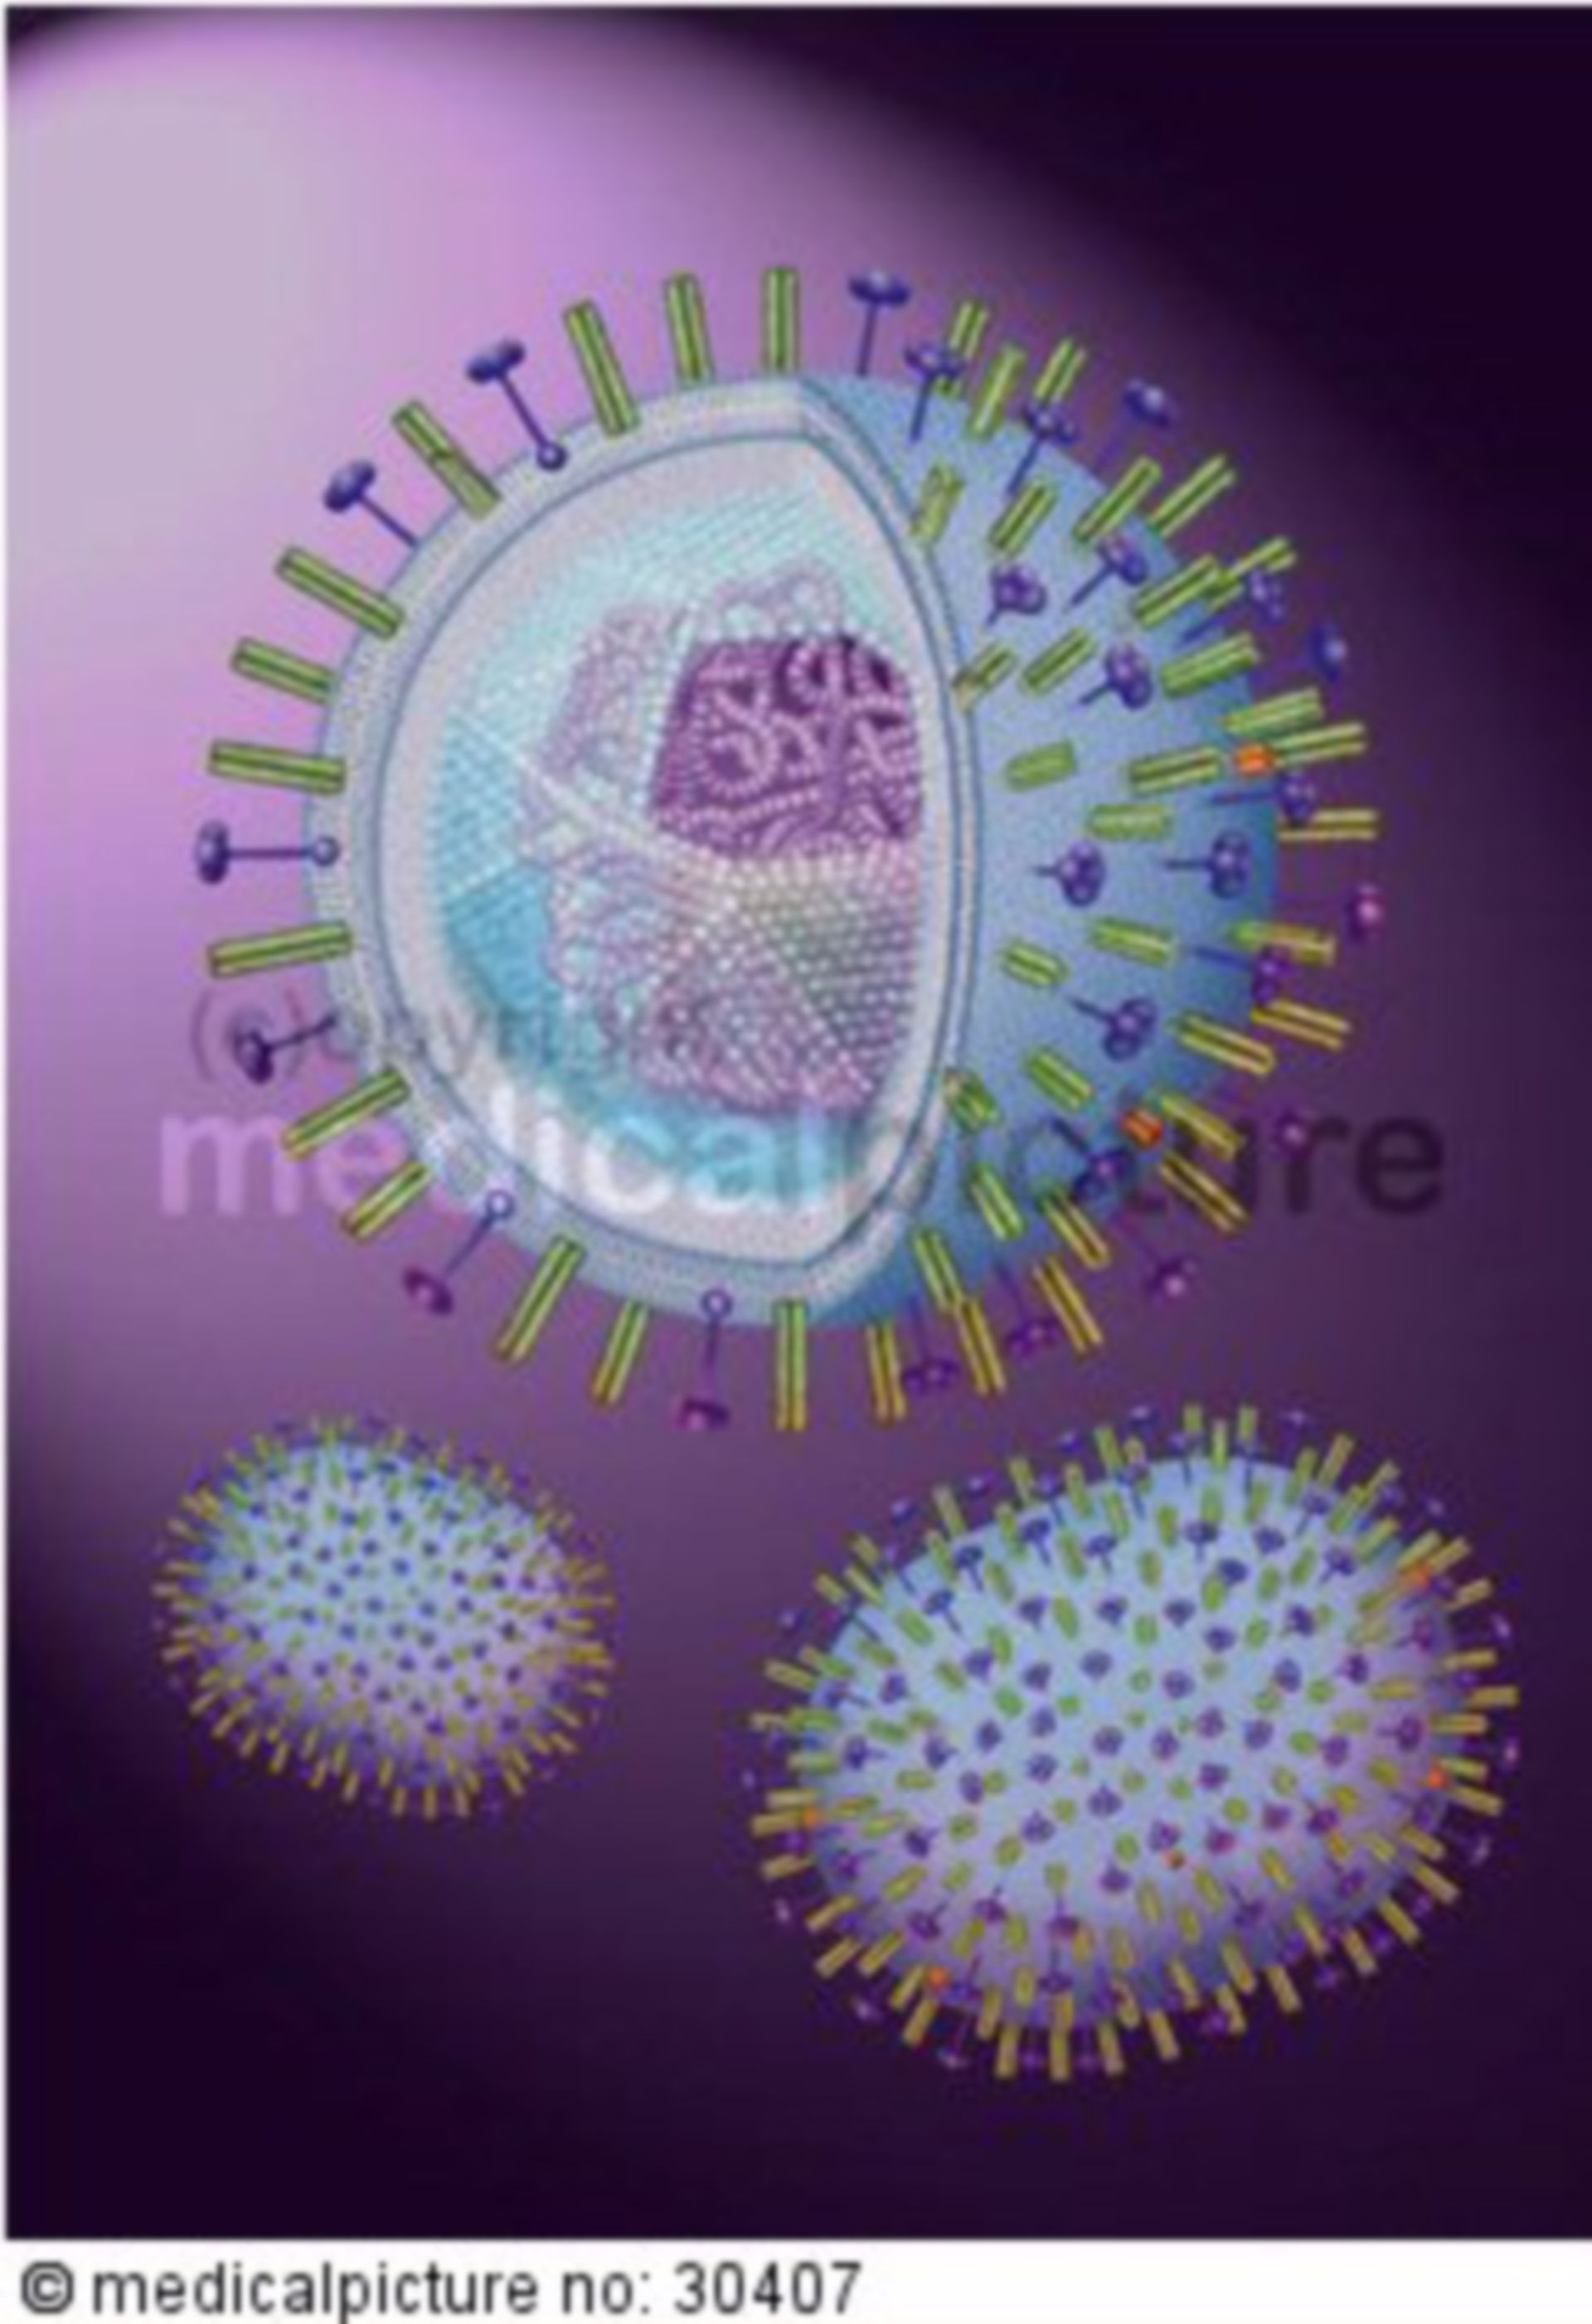  H5N1 Virus mit DNA, Influenza-A Virus with RNA, Vogelgrippe, avian influenza, bird flu 